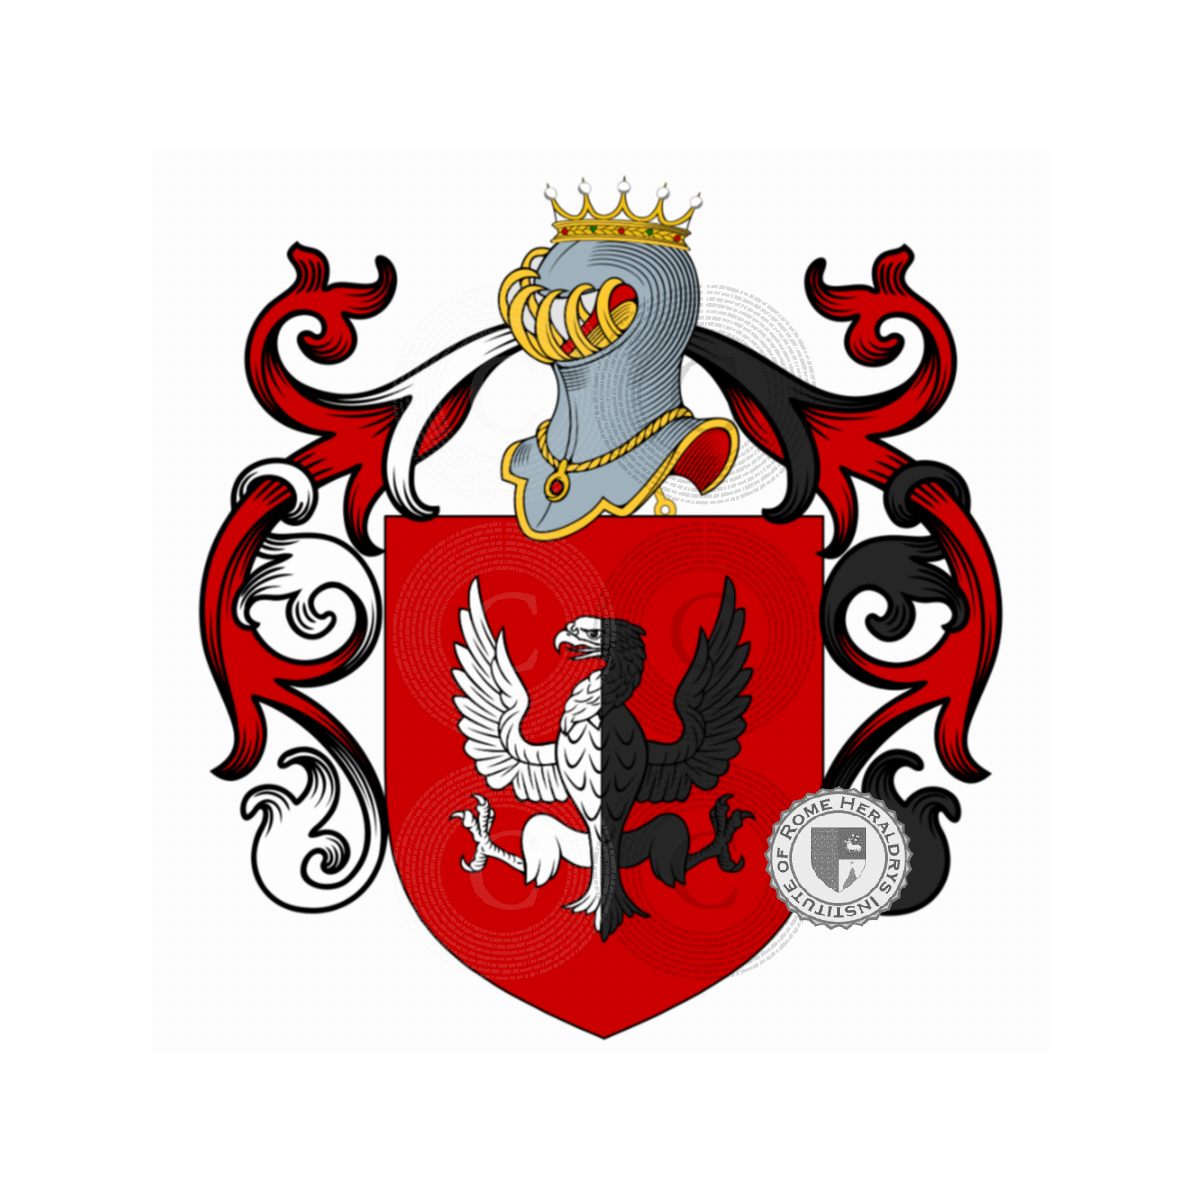 Coat of arms of familyConti, Conte (del),Conti (del)